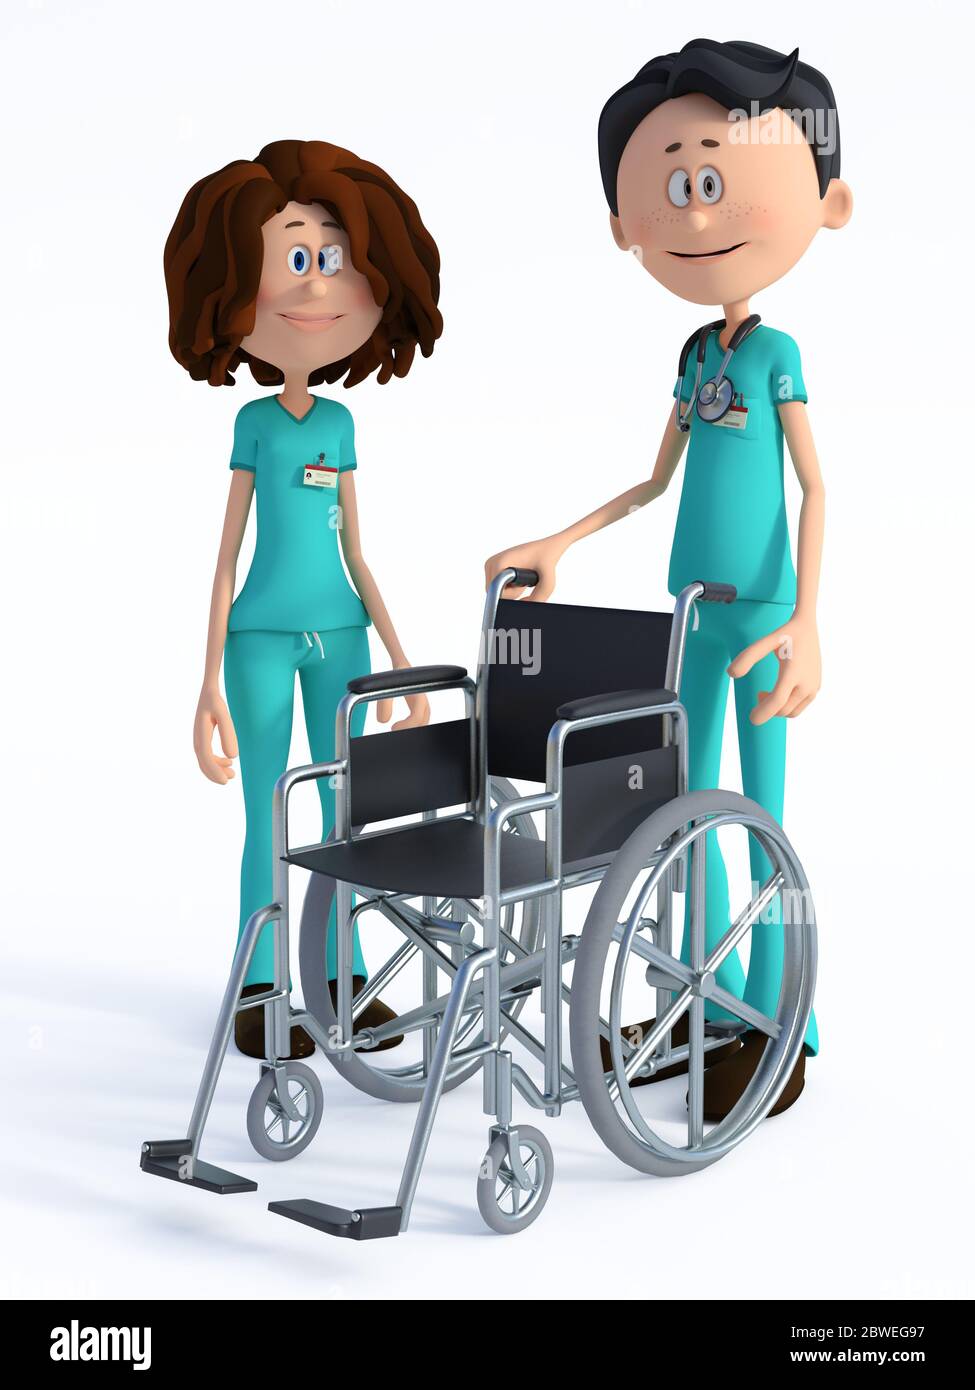 Rendu 3D d'une jeune infirmière et d'un sympathique médecin de dessin animé souriant portant un stéthoscope et debout avec un fauteuil roulant vide. Fond blanc. Banque D'Images